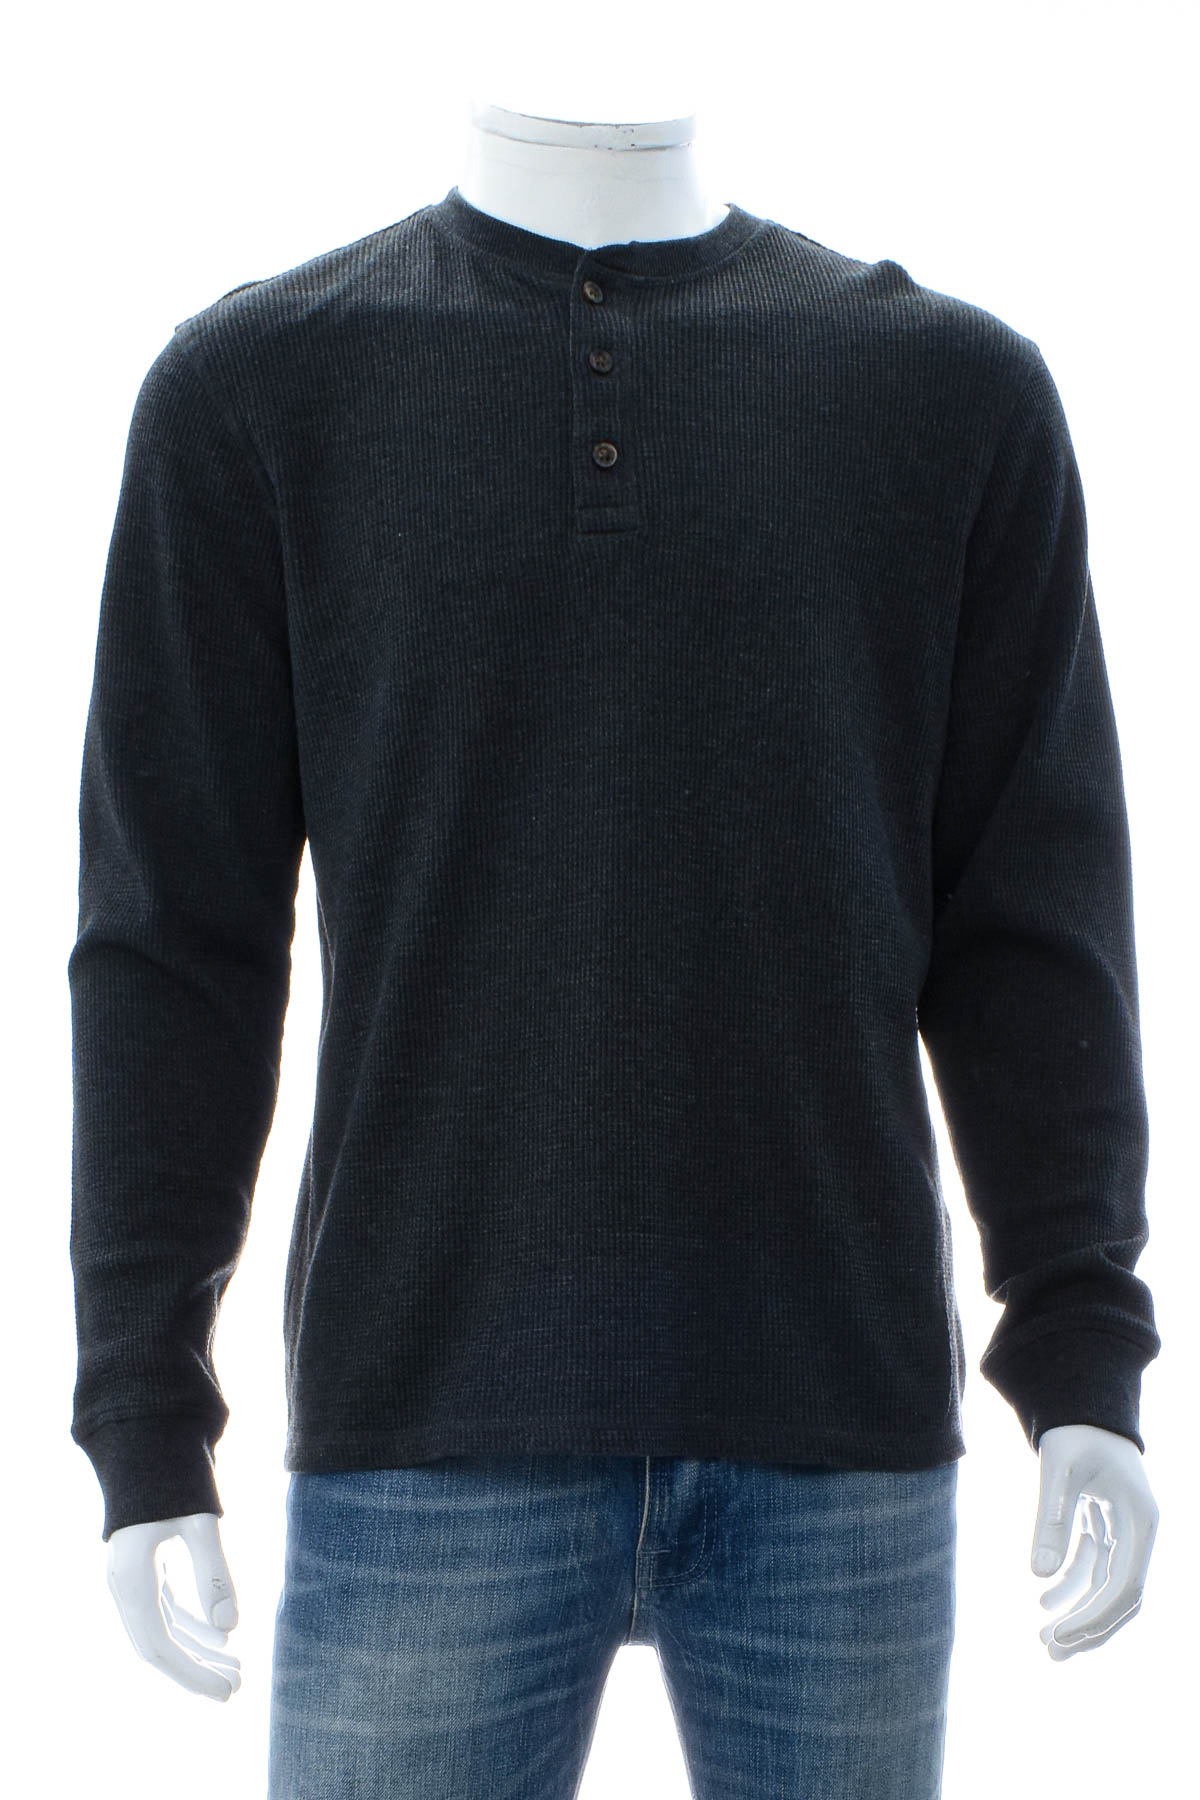 Men's sweater - Member's Mark - 0